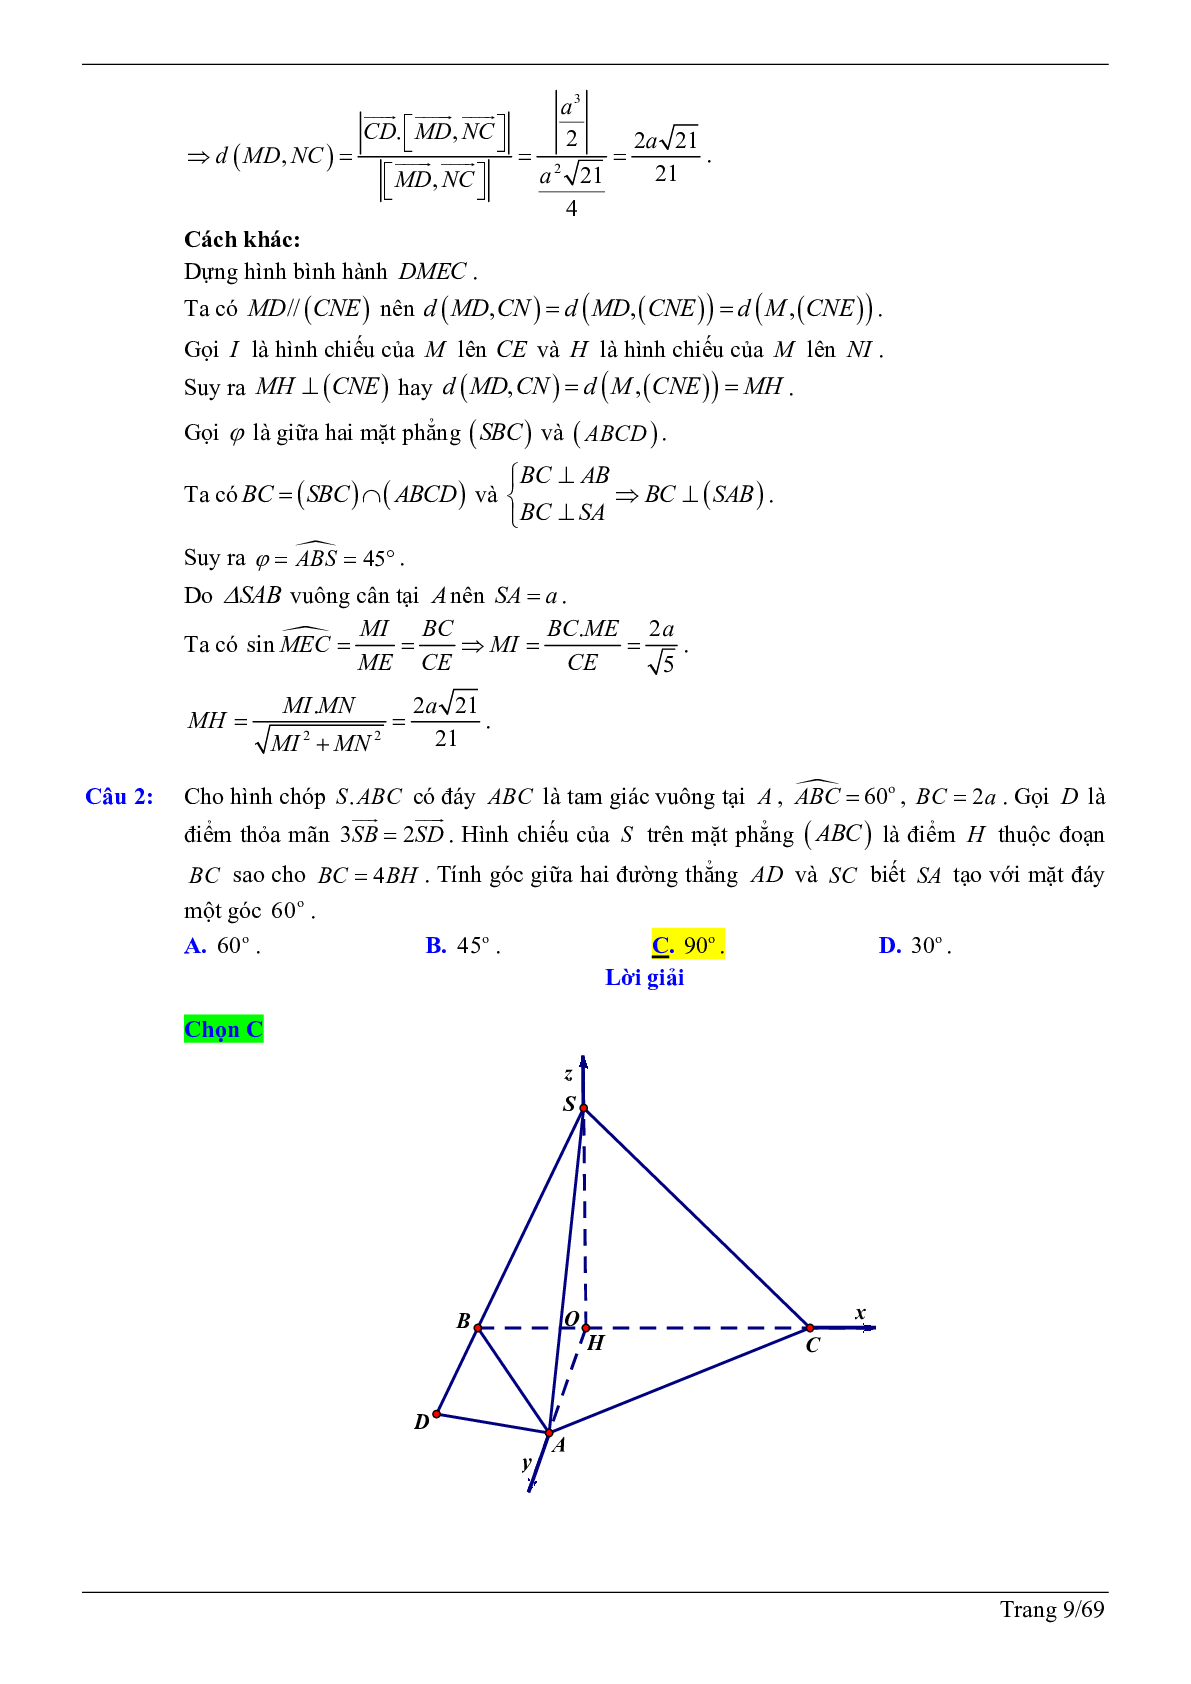 50 câu trắc nghiệm sử dụng phương pháp tọa độ giải bài toán hình học không gian - có đáp án chi tiết (trang 9)